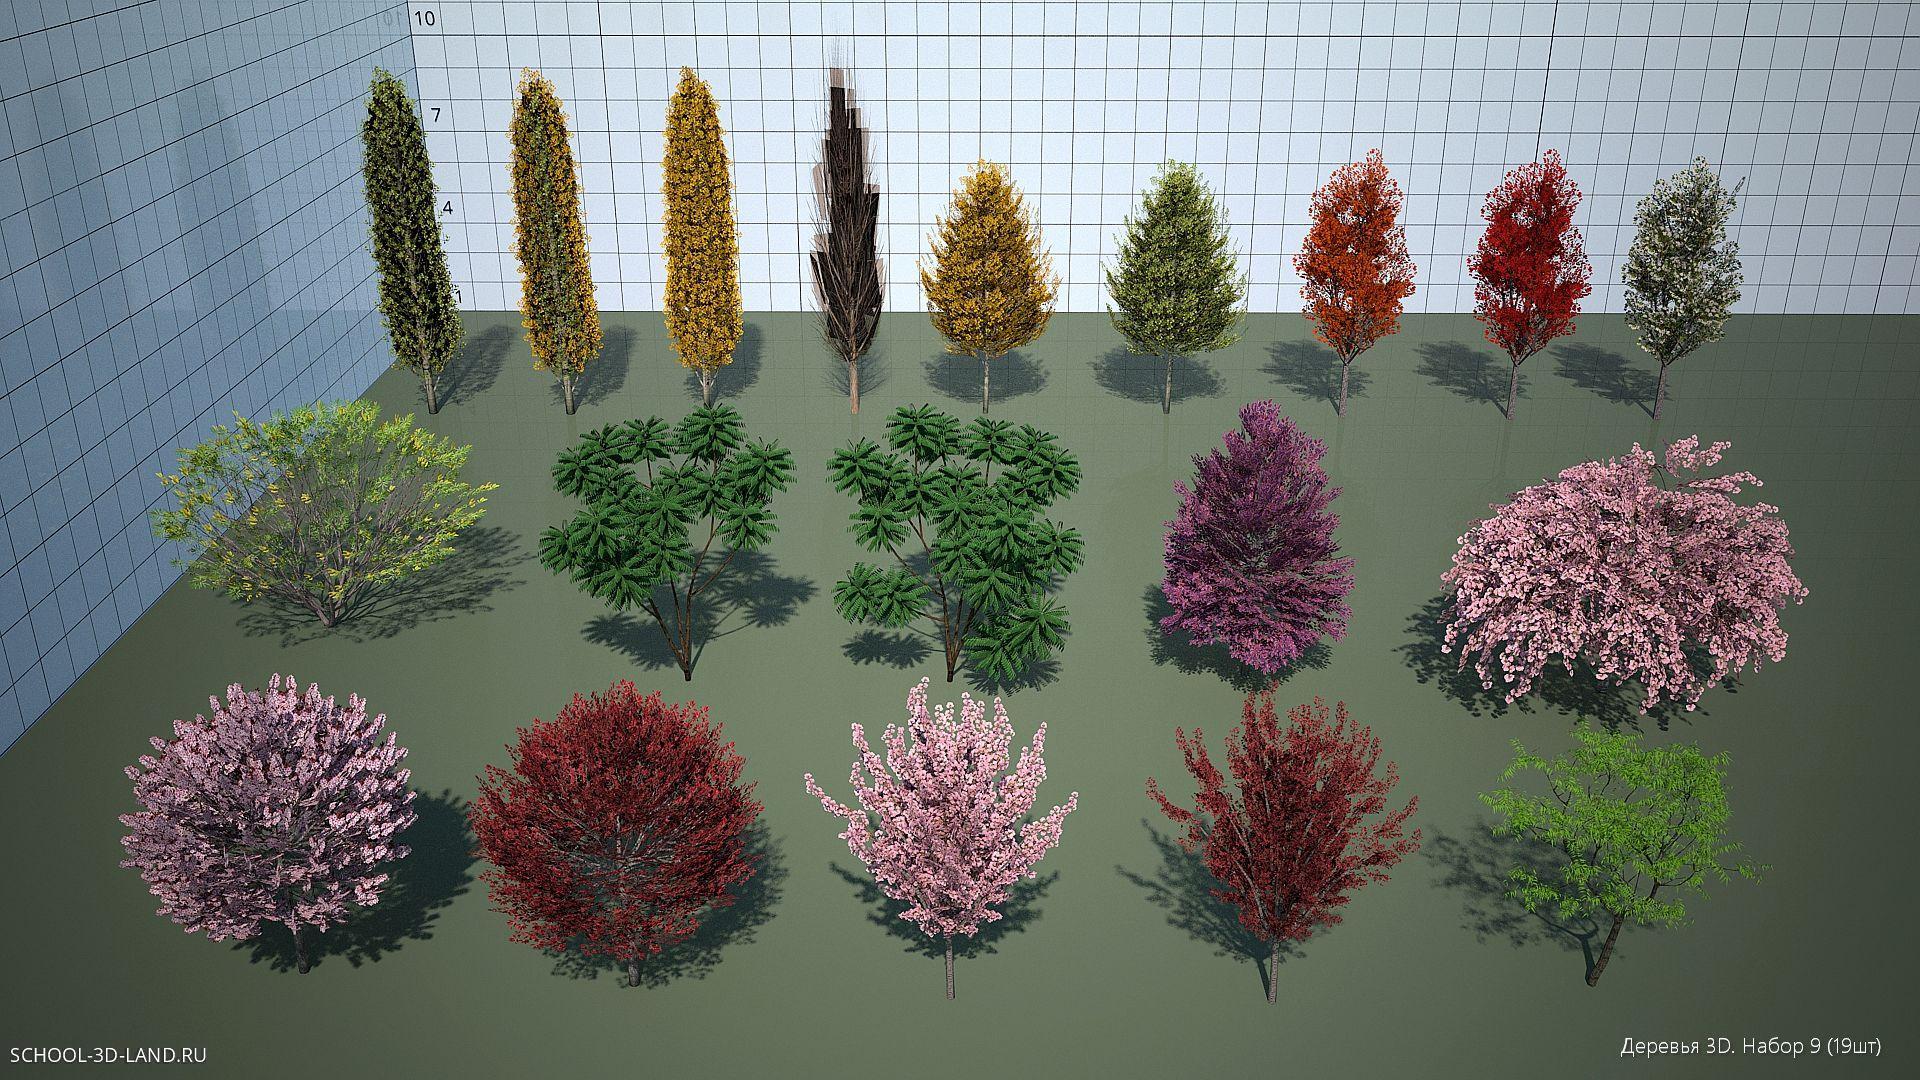 Деревья 3D. Набор 9 (19шт)